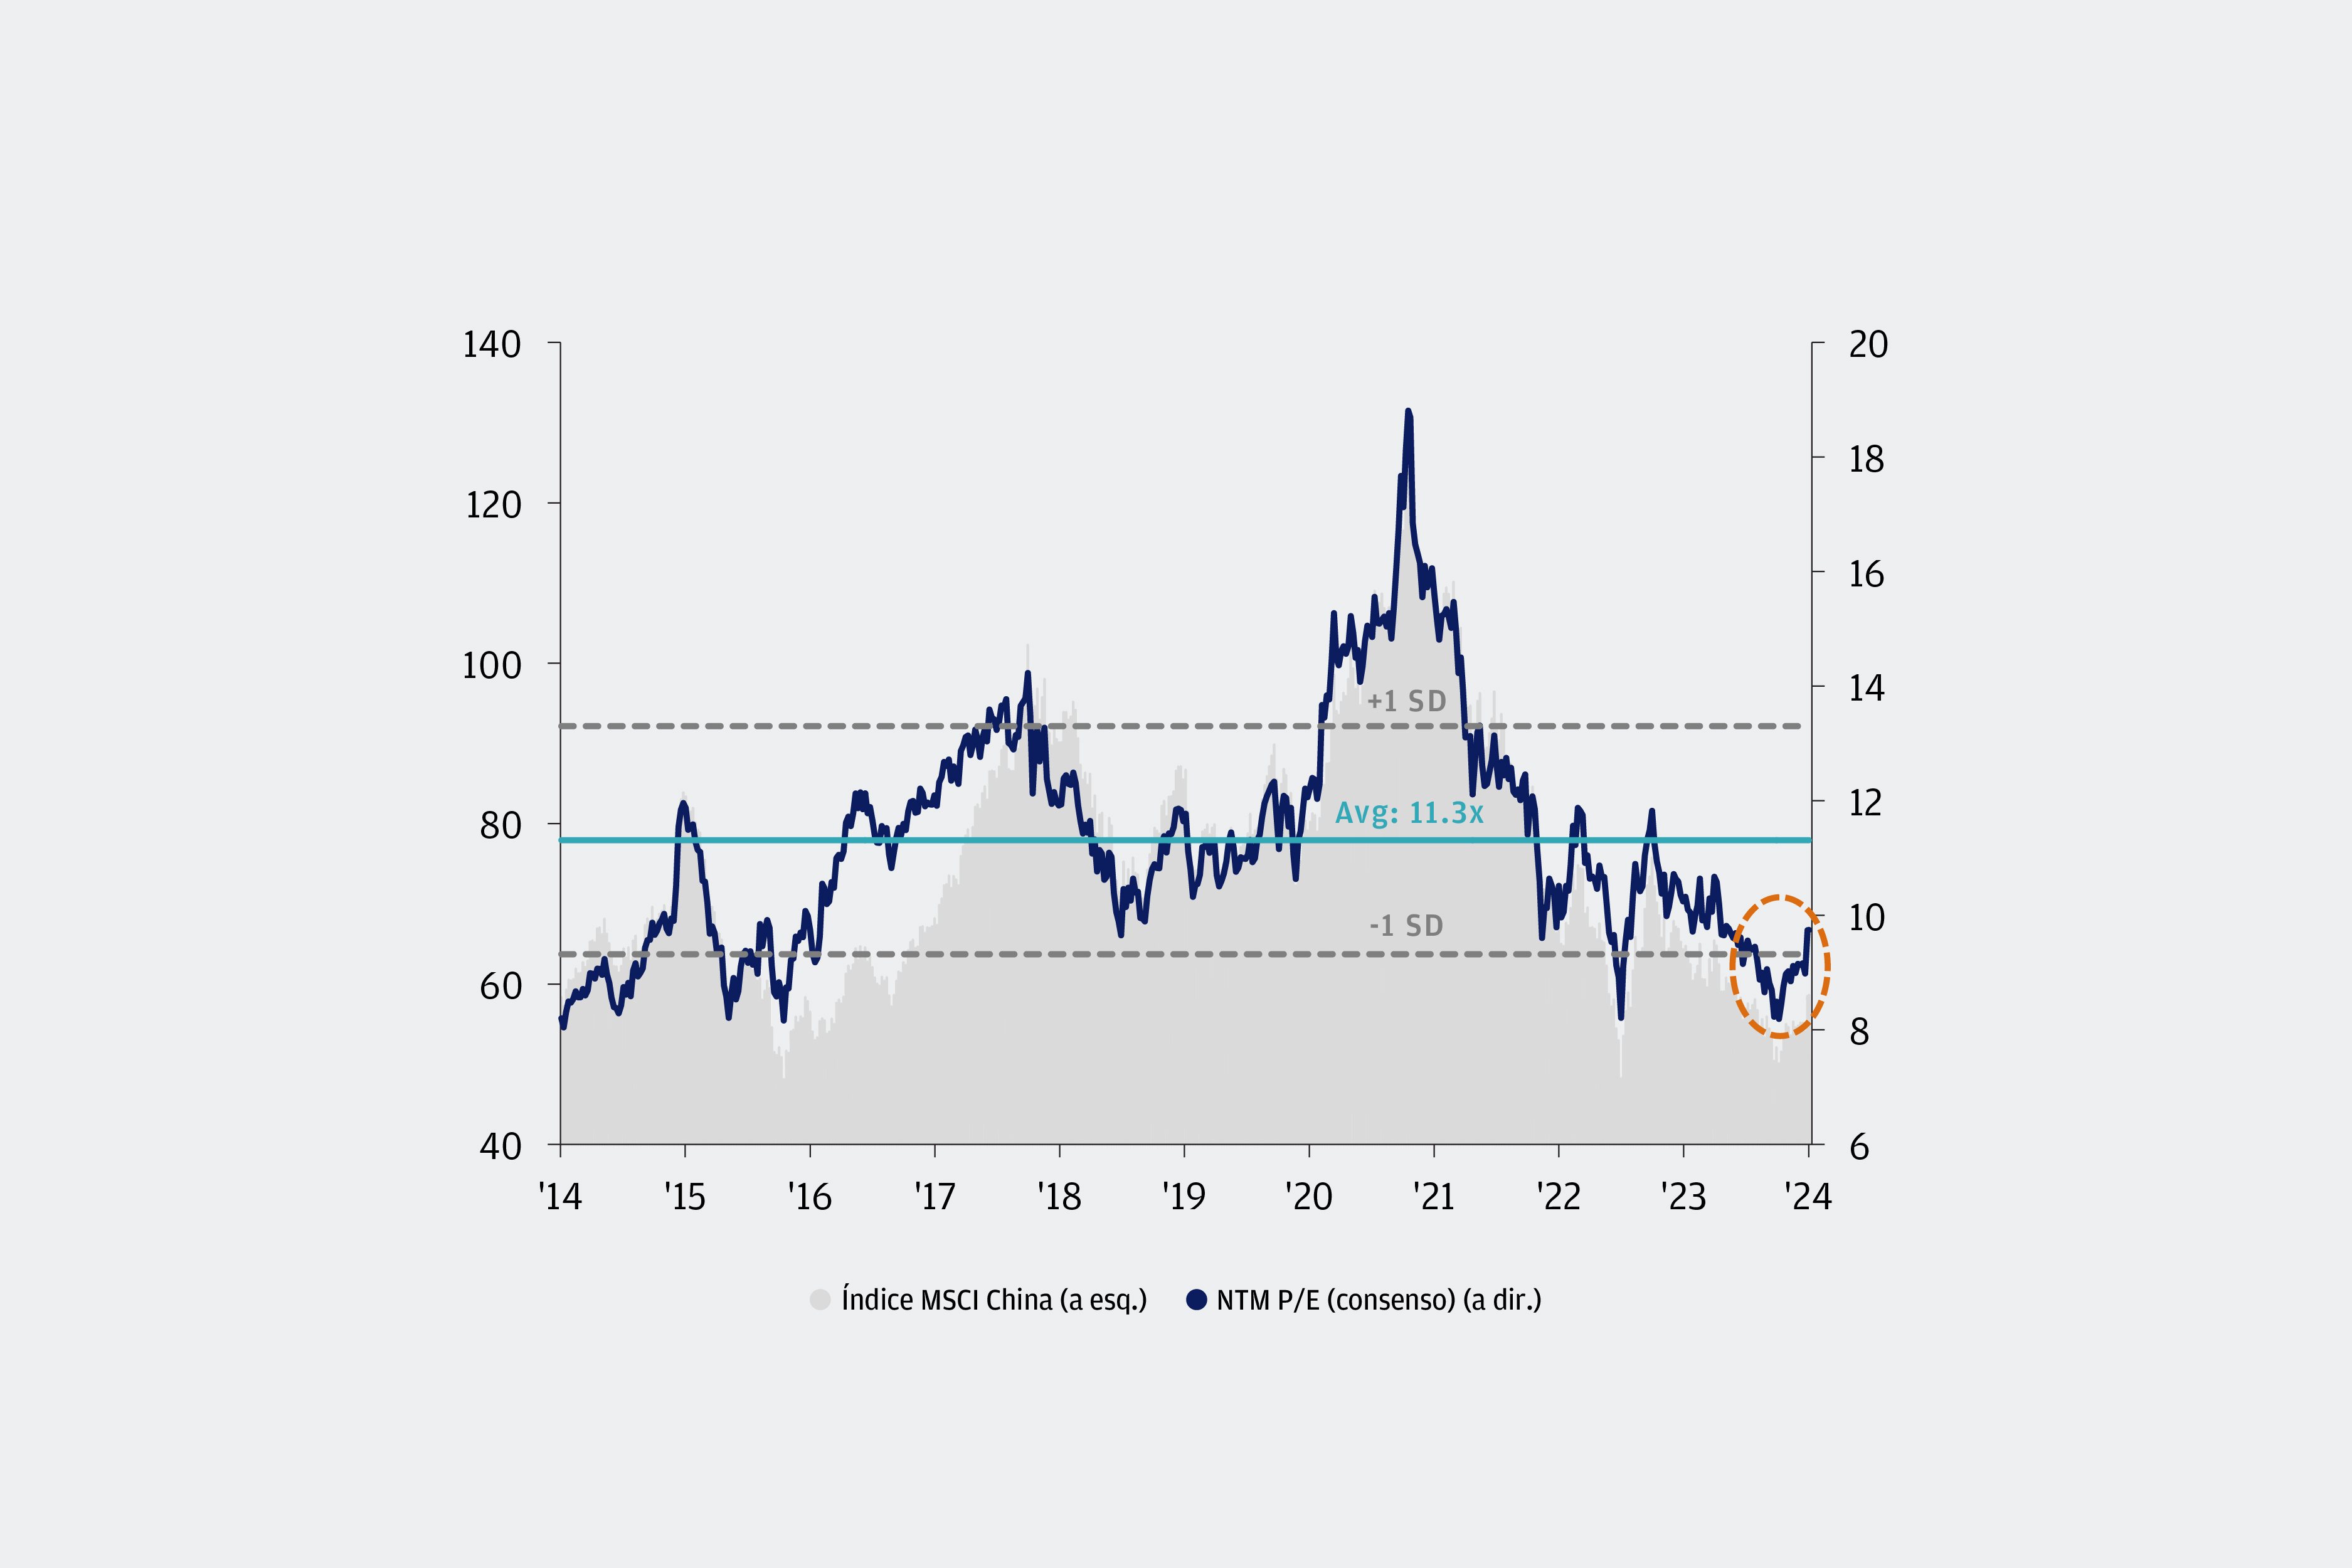 O gráfico de linhas mostra o índice de preço/lucro dos próximos doze meses (NTM P/E) do índice MSCI China ao longo de um período de 10 anos, de 2014 a 2024. A média de 10 anos para o índice de NTM P/E do MSCI China está em 11,3 vezes, com um desvio padrão positivo de 13,3 vezes e um desvio padrão negativo de 9,3 vezes. A área sombreada representa os movimentos de preço do índice MSCI China ao longo do mesmo período, que se movimenta em linha com seu índice de NTM P/E.   Tanto o índice de NTM P/E quanto o preço das ações do MSCI China estavam em uma tendência de alta, embora com algumas volatilidades entre 2014 e 2021. Os valores iniciais de NTM P/E e do preço das ações em janeiro de 2014 foram de 8,4 vezes e 61,1, respectivamente, e viram um aumento geral antes de atingirem o pico em fevereiro de 2021, com o NTM P/E em 18,8 vezes e 122,9 para o preço das ações. Esse fato foi seguido por uma queda acentuada para ambos os indicadores, onde caíram de seus picos em fevereiro de 2021 para 8,2 vezes e 48,3 para o índice de NTM P/E e preço das ações em outubro de 2022, devido à política de "Covid zero" da China. Depois, o índice de NTM P/E e o preço das ações do MSCI China se recuperaram e aumentaram para 11,8 vezes e 69,4, respectivamente, em meio ao otimismo com a reabertura da China. No entanto, isso não durou muito, pois o índice de NTM P/E e o preço das ações do MSCI China caíram e estavam em uma tendência de baixa desde janeiro de 2023, devido a rigorosas repressões regulatórias e desempenho macroeconômico decepcionante. Tanto o preço quanto o NTM P/E caíram para cerca de 50 e 8,4 vezes em fevereiro de 2024, com o índice de NTM P/E abaixo do seu desvio padrão negativo de 9,3 vezes.  No entanto, observamos uma reversão das avaliações das ações chinesas de níveis de crise, com tanto o preço do MSCI China quanto o NTM P/E aumentando para 58 e 9,7 no final de abril.